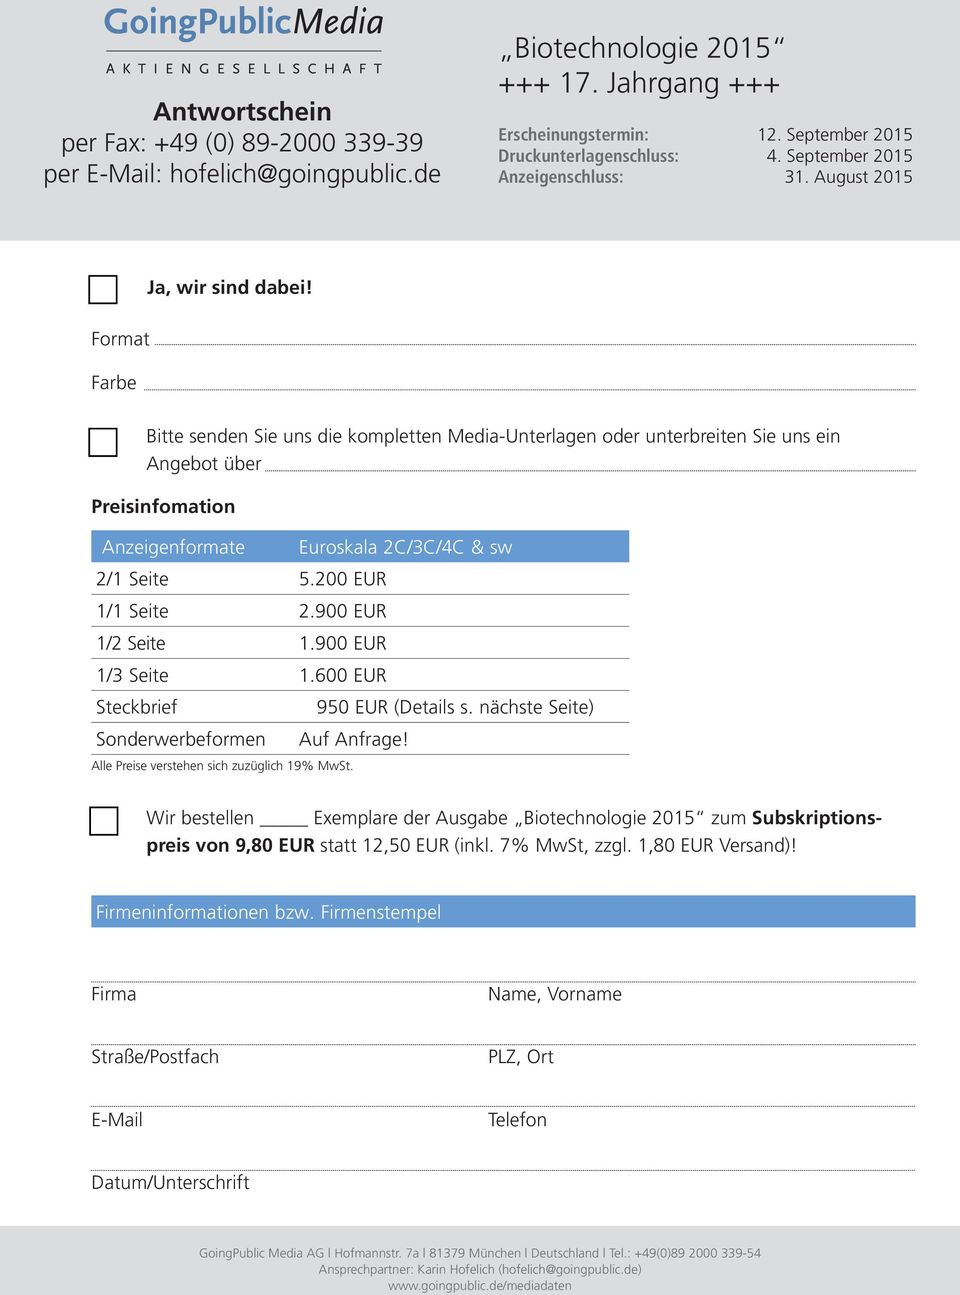 Bitte senden Sie uns die kompletten Media-Unterlagen oder unterbreiten Sie uns ein Angebot über Preisinfomation Anzeigenformate Euroskala 2C/3C/4C & sw 2/1 Seite 5.200 EUR 1/1 Seite 2.